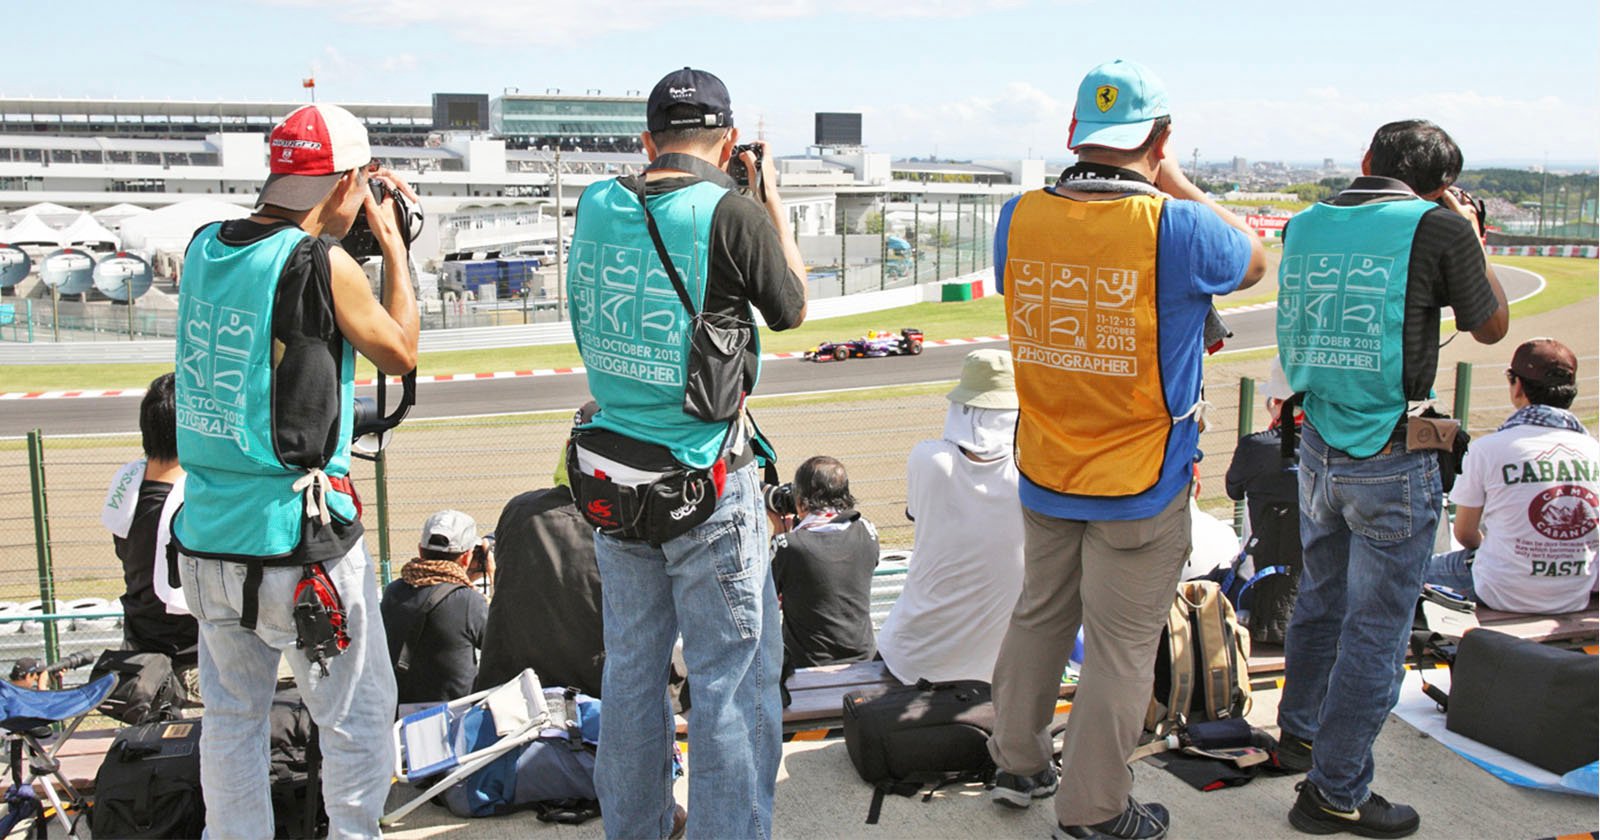 La carrera de Fórmula 1 en Japón vende entradas especiales para fotógrafos aficionados